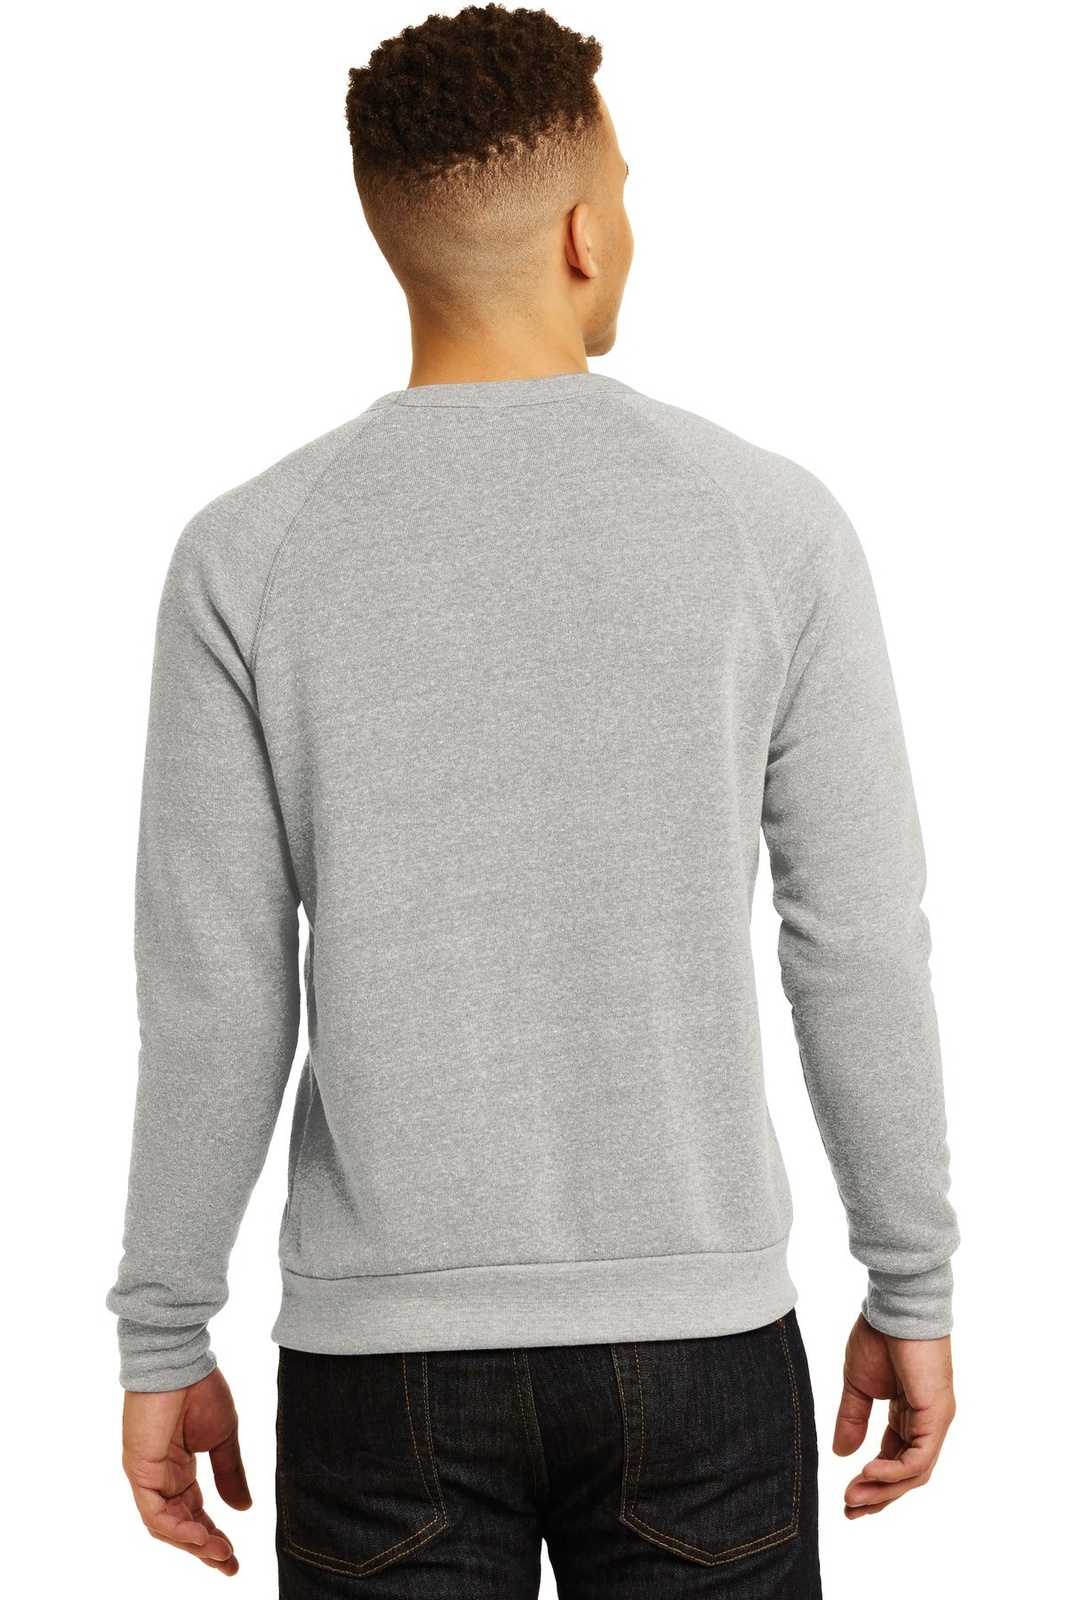 Alternative AA9575 Champ Eco-Fleece Sweatshirt - Eco Oatmeal Gray - HIT a Double - 1